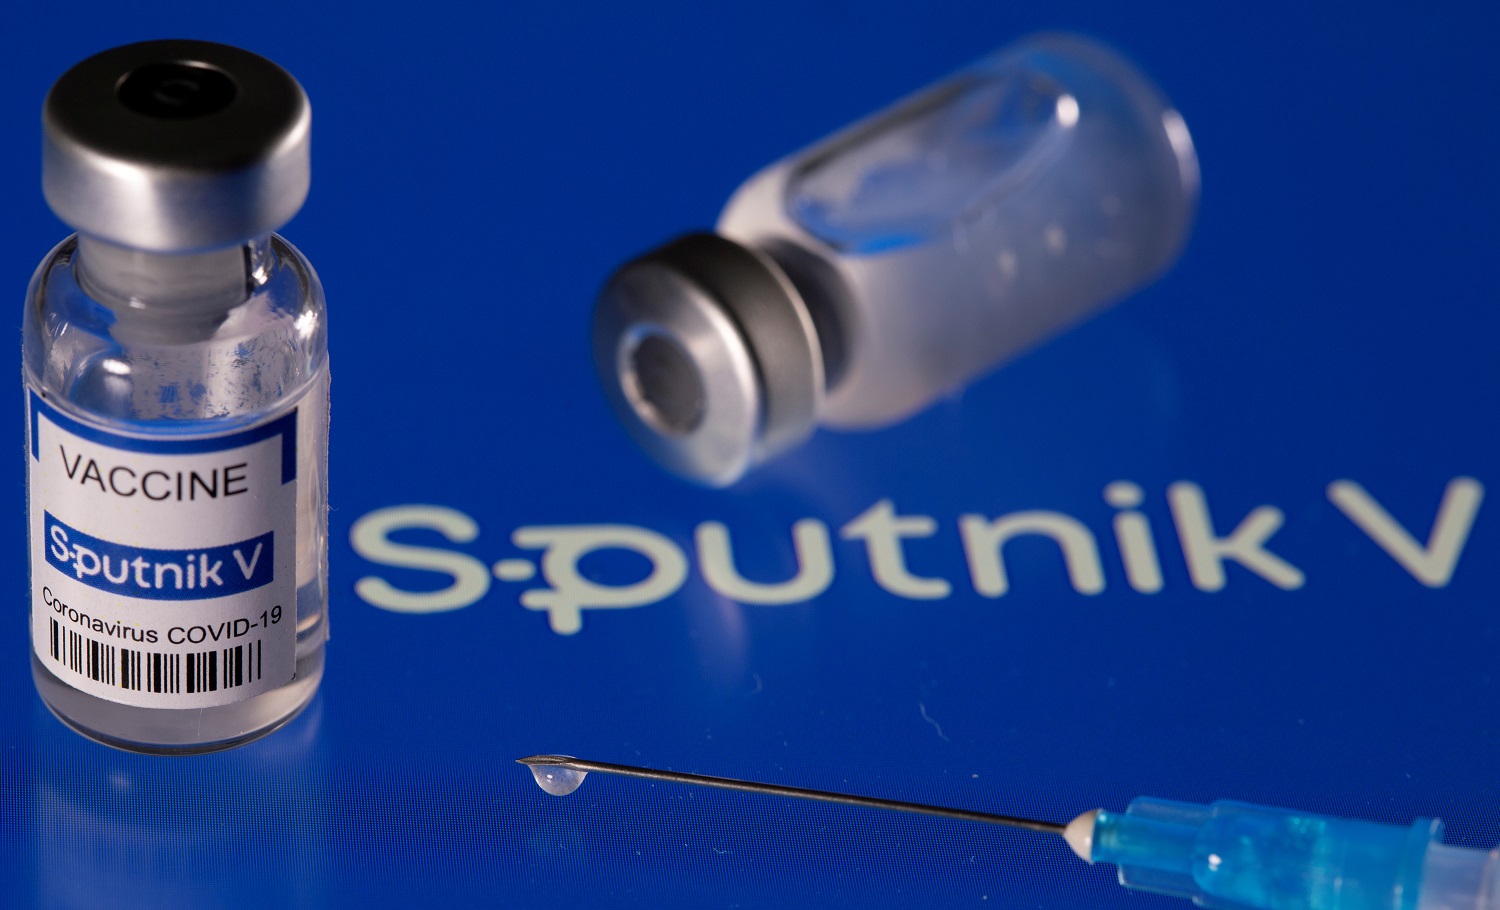 Causas por las que Europa aún no puede evaluar ni aprobar la vacuna Sputnik V